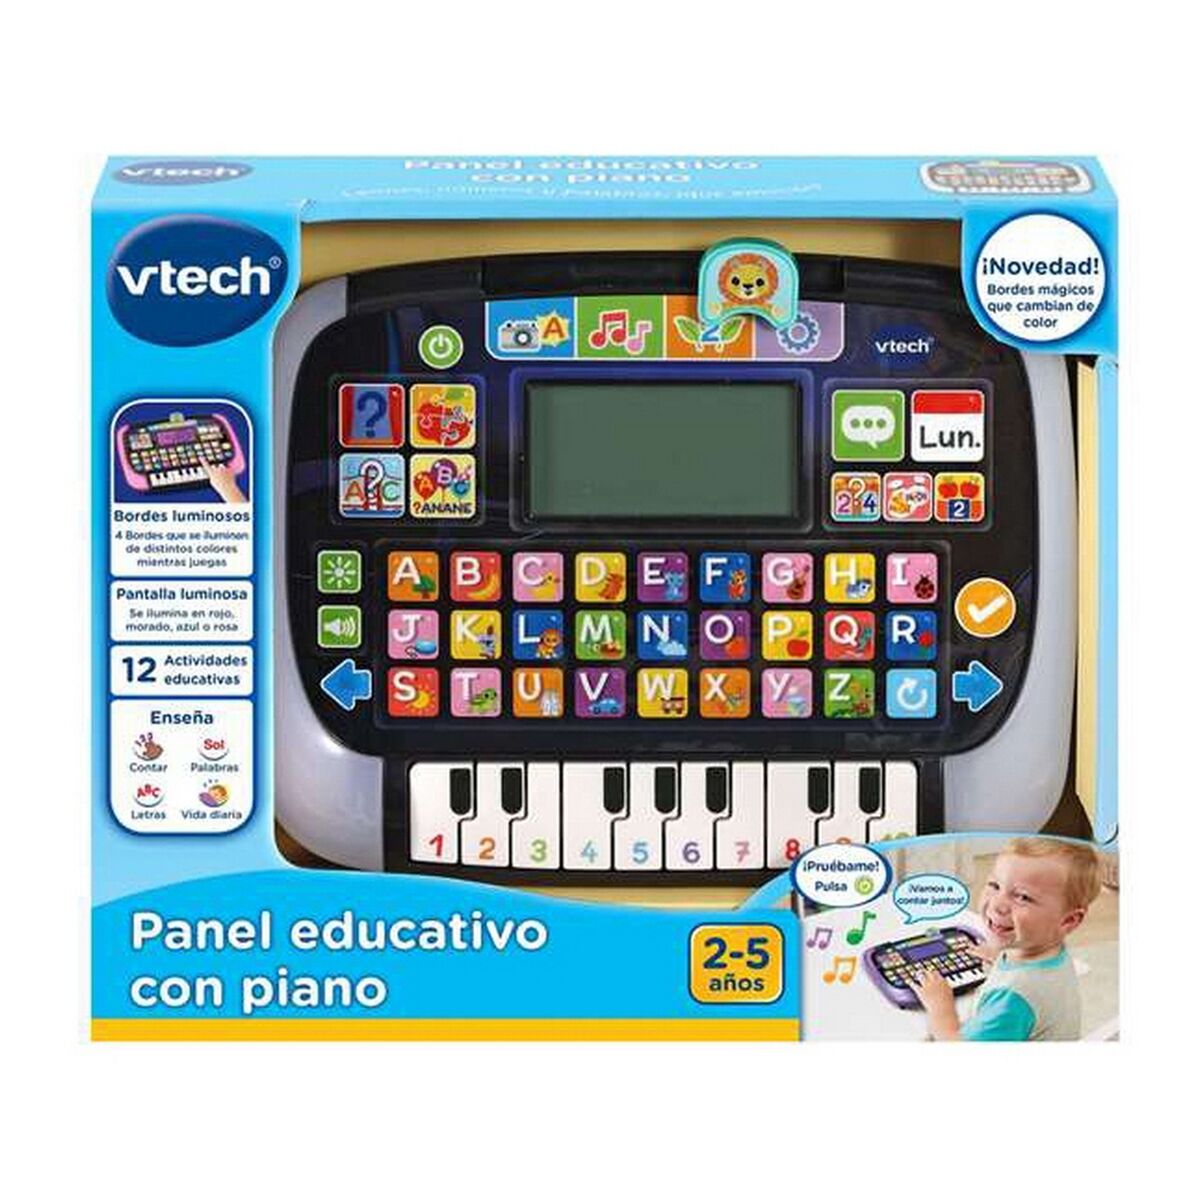 VTech- Detský tablet s viacerými aplikáciami, vzdelávací panel s klavírom, vzdelávacie hračky pre deti od 2 rokov, anglická verzia VTECH